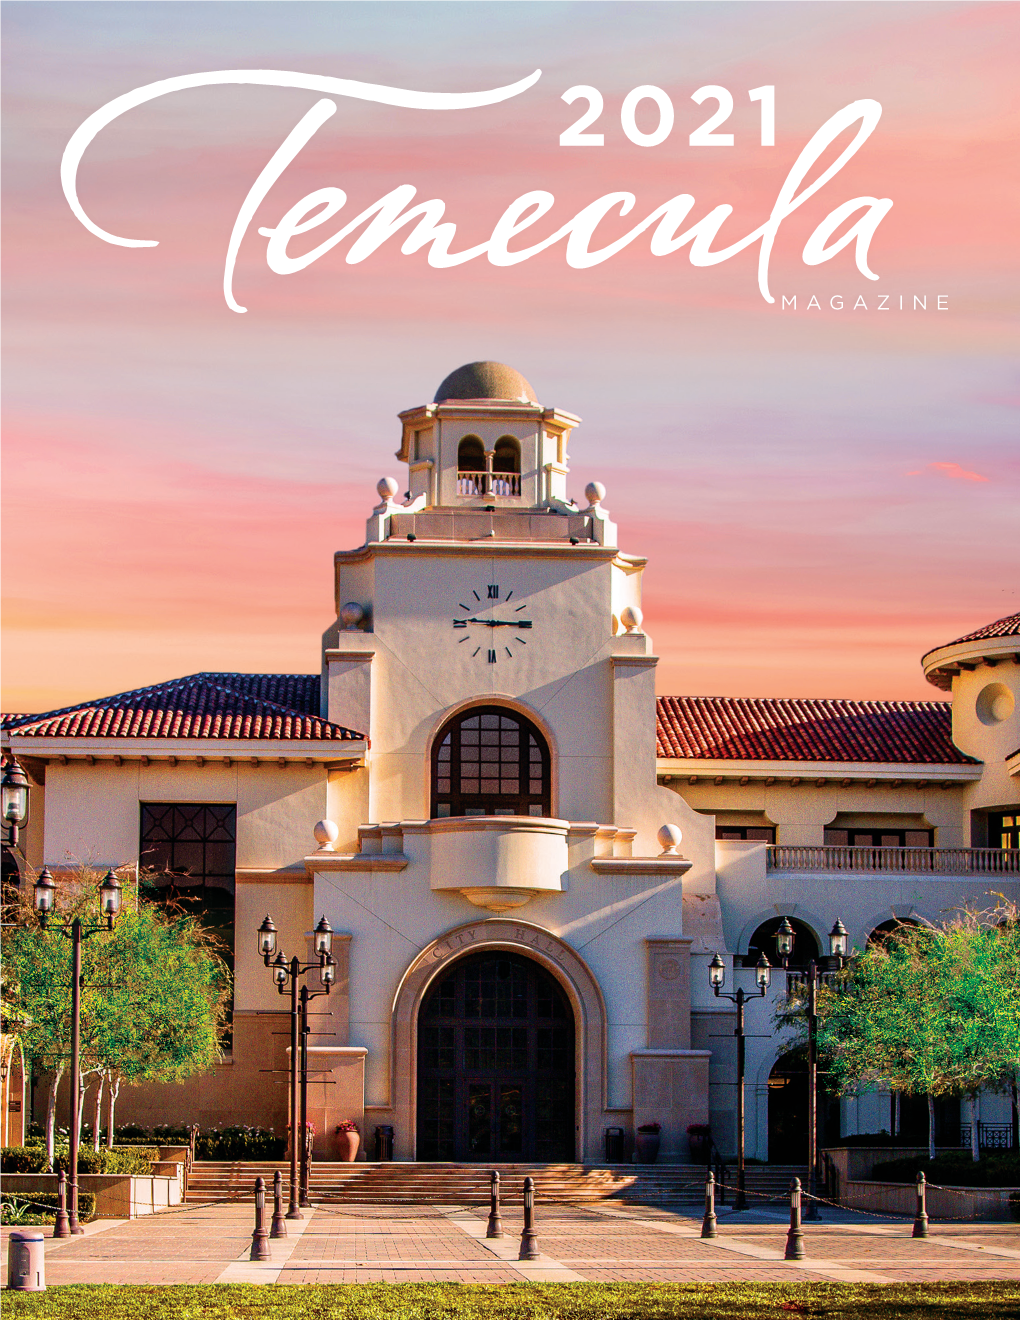 2021 Temecula Magazine